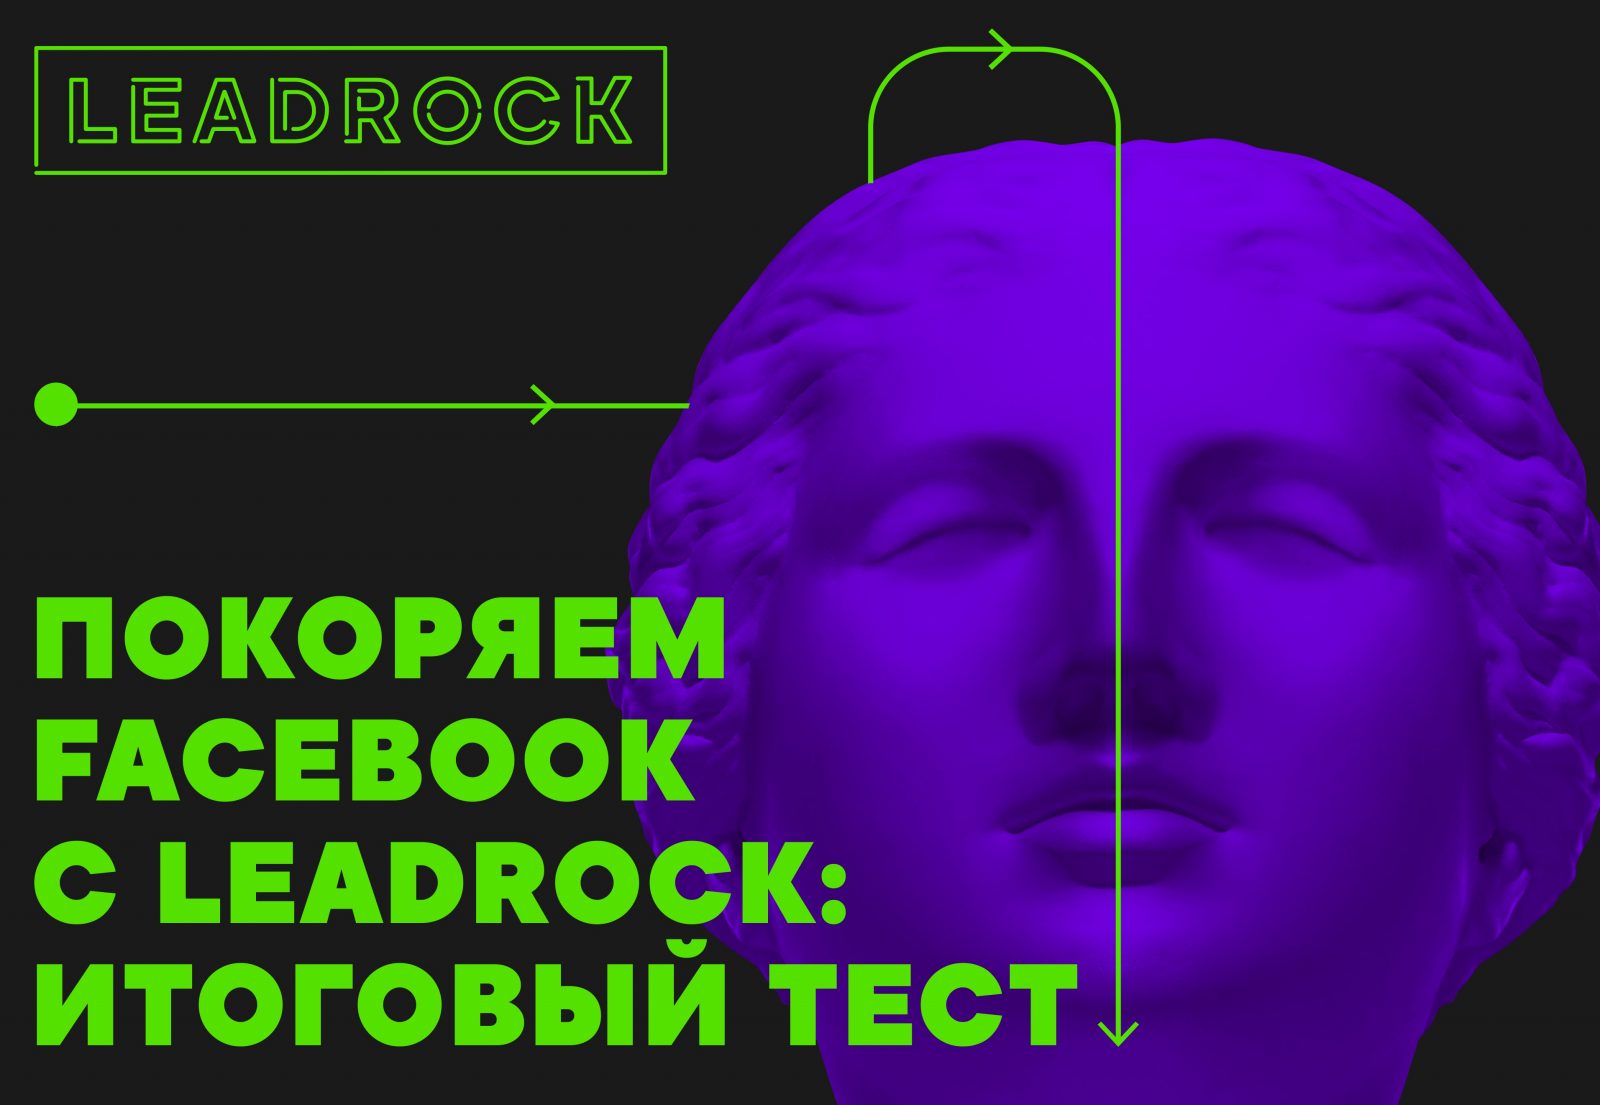 Покоряем Facebook с LeadRock: итоговый тест